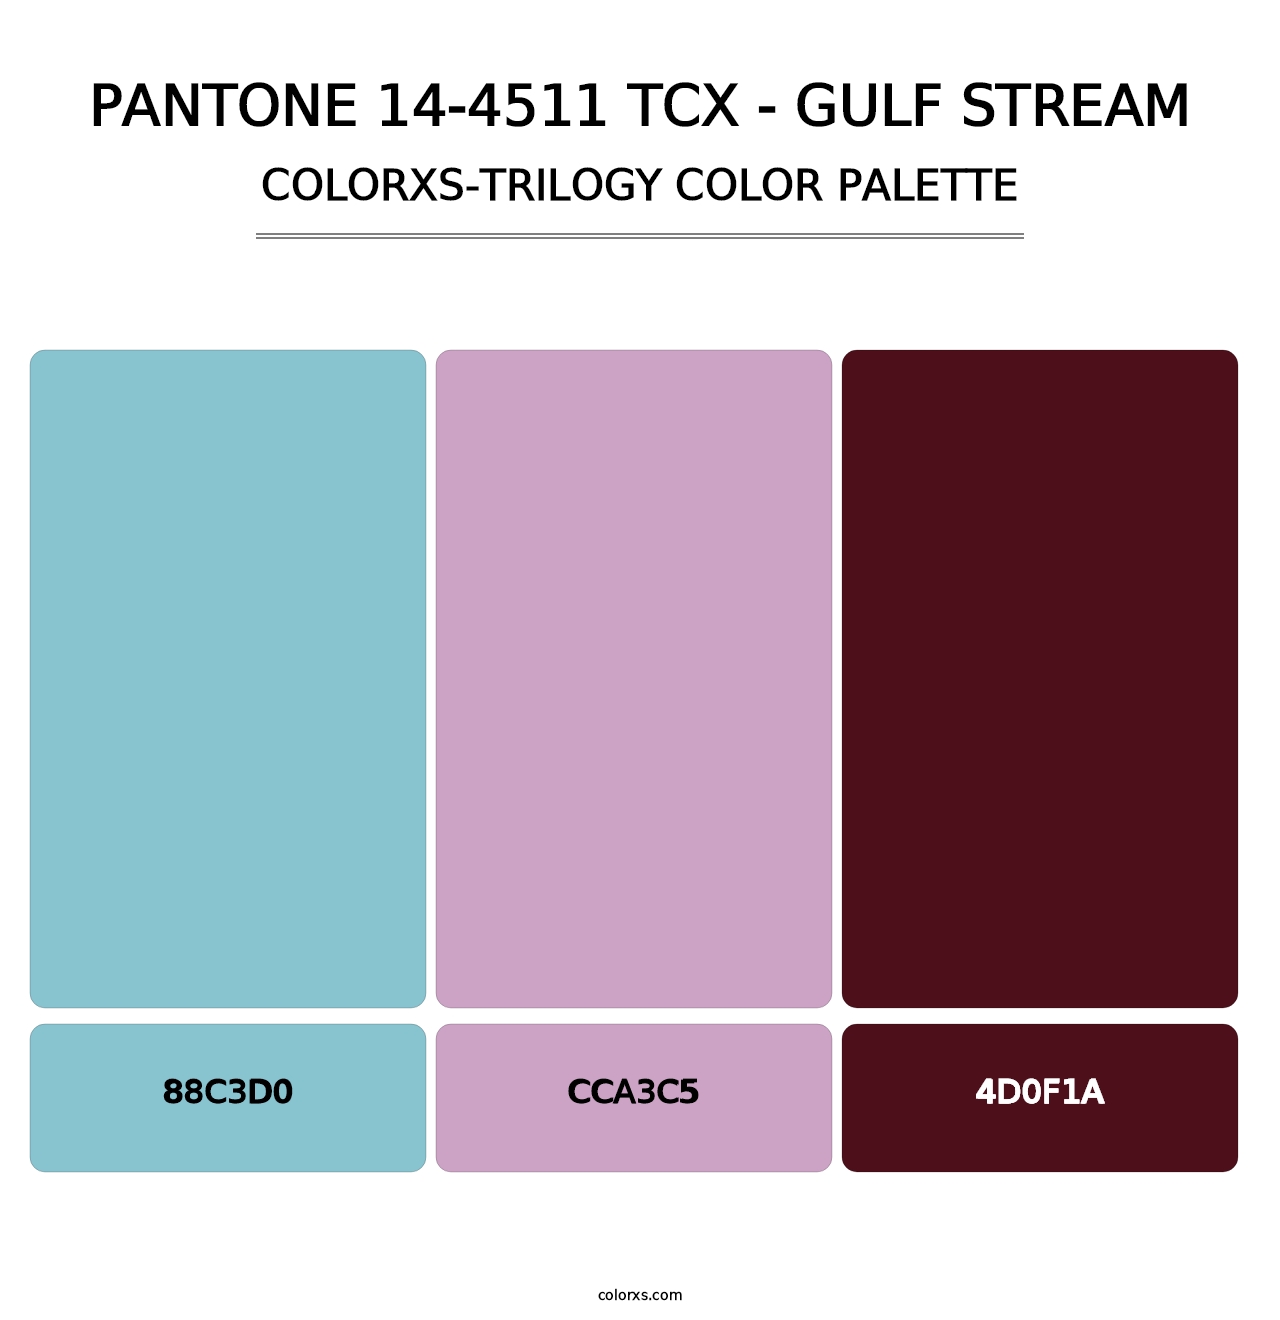 PANTONE 14-4511 TCX - Gulf Stream - Colorxs Trilogy Palette